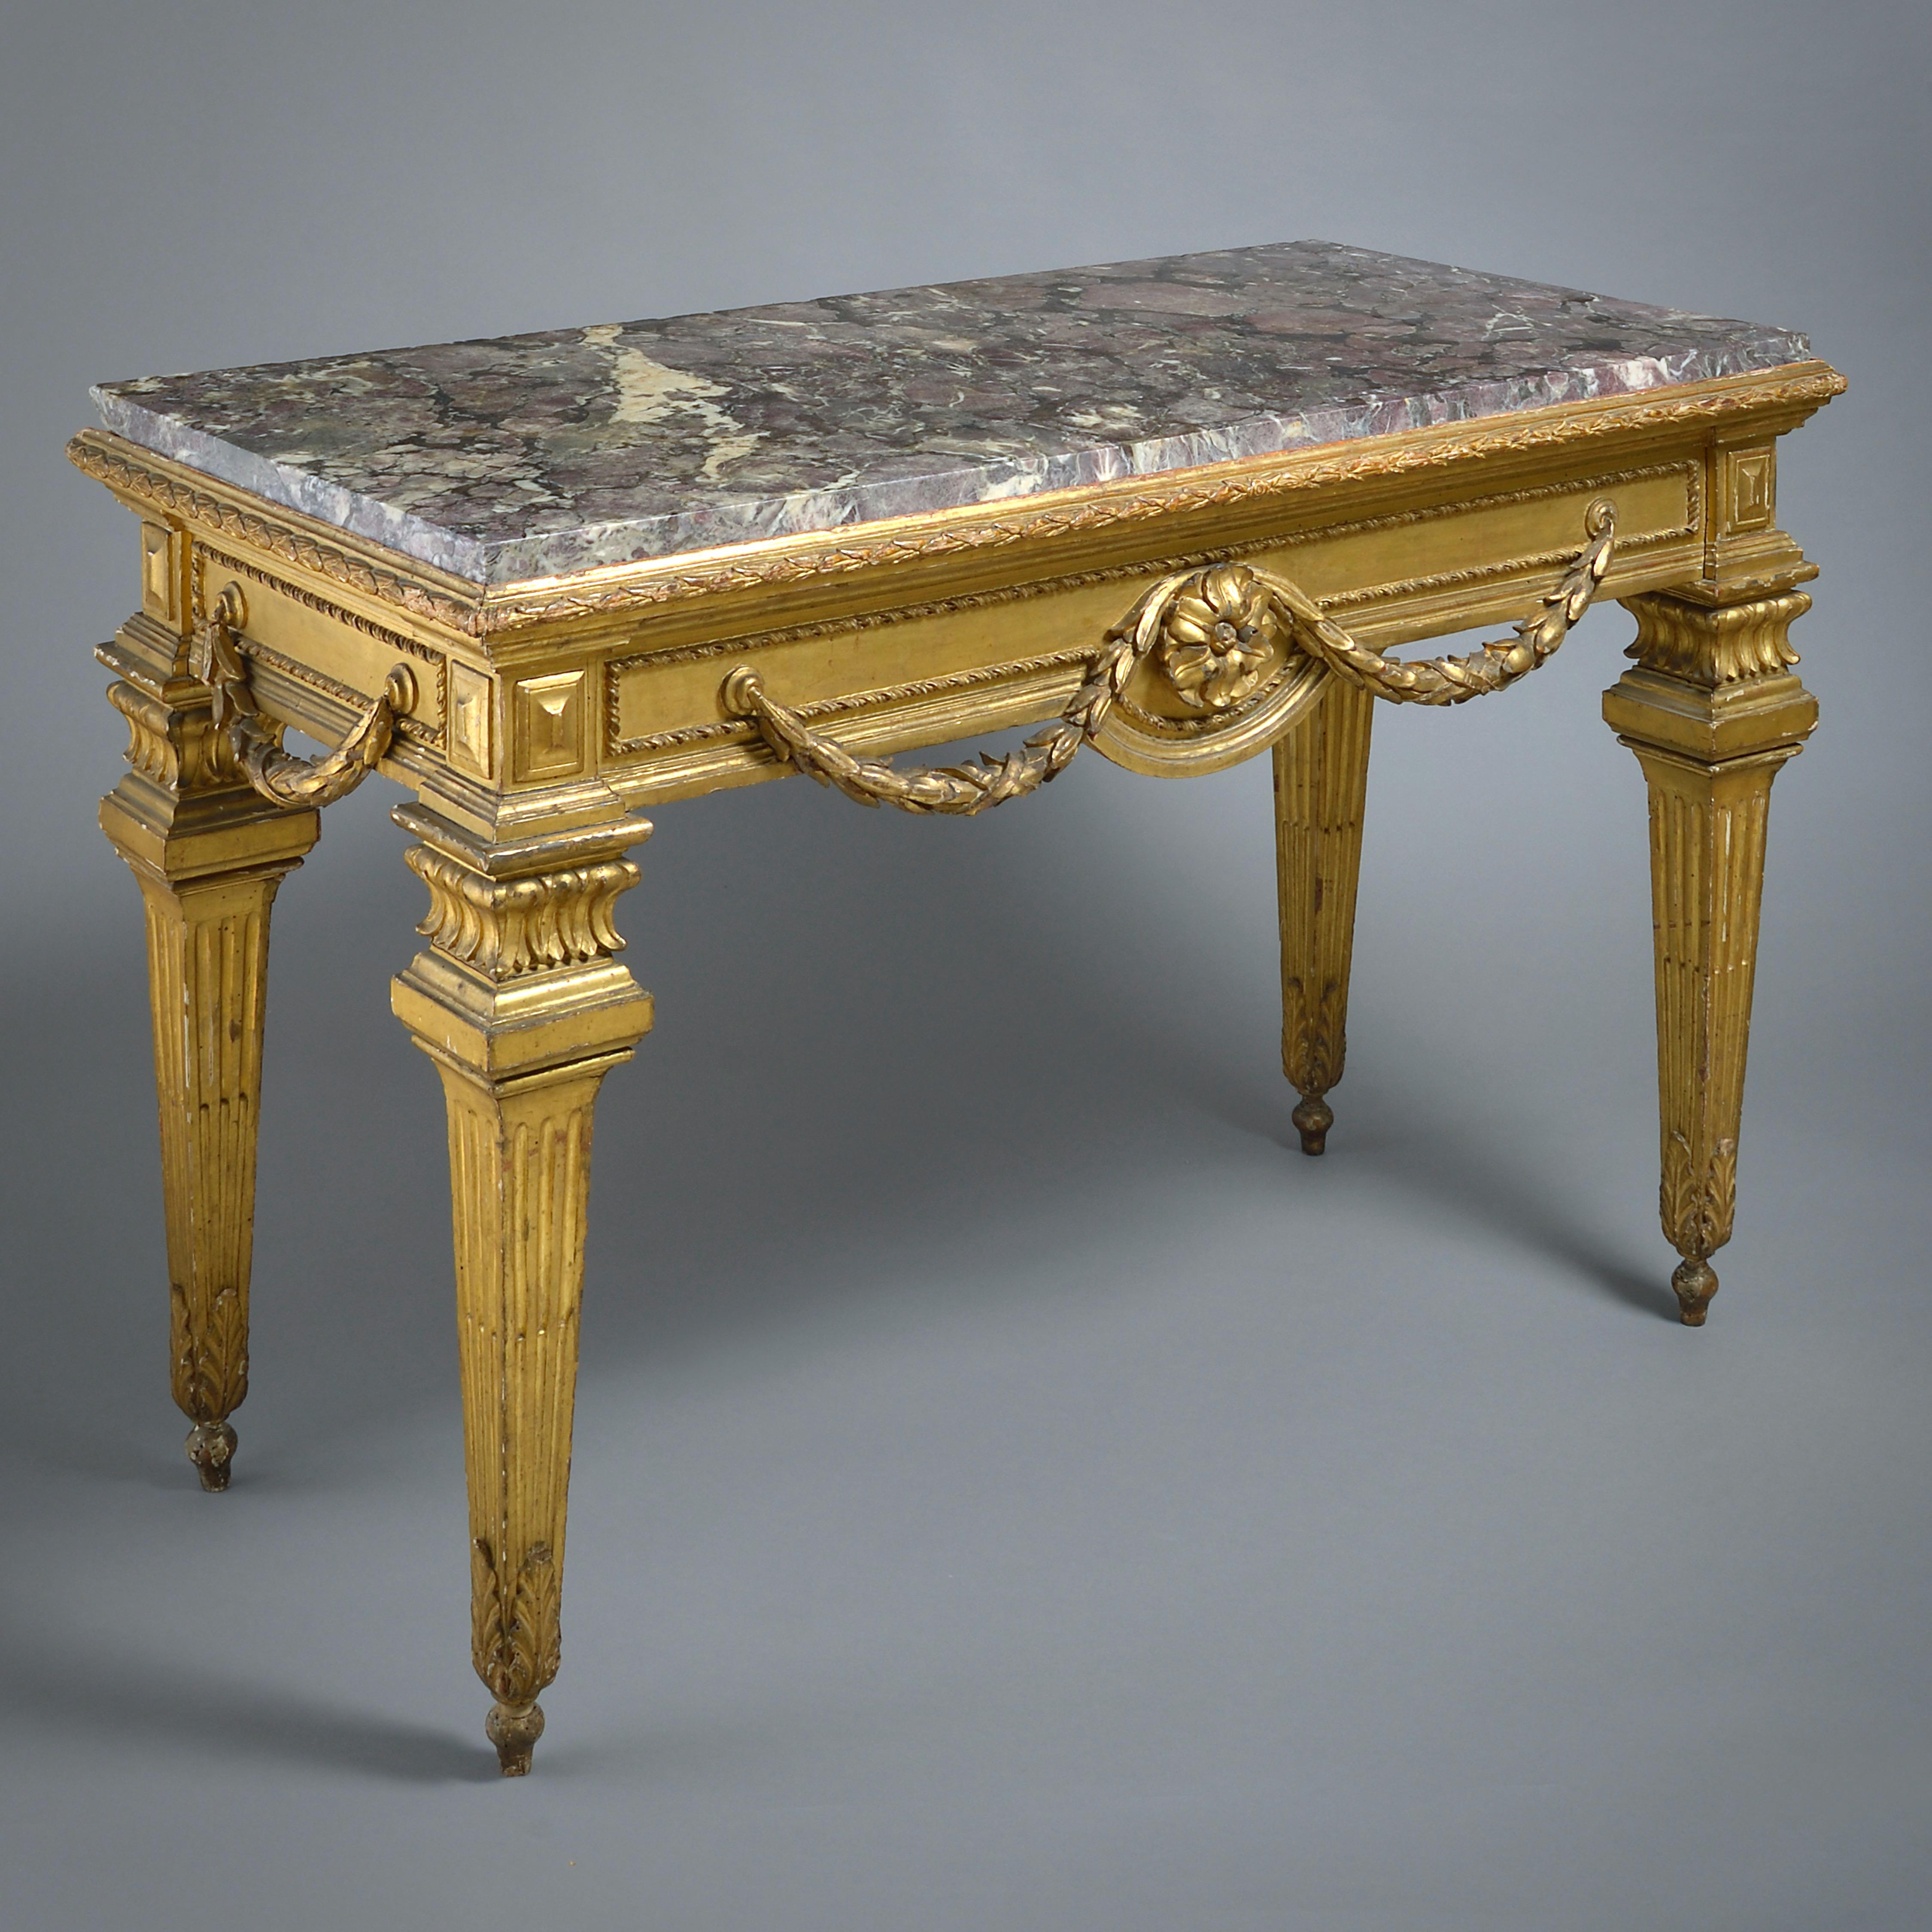 TABLE D'APPOINT ROMAINE EN BOIS DORÉ AVEC SON PLATEAU EN MARBRE BRÈCHE VIOLETTE D'ORIGINE, VERS 1775.

Conserve sa dorure d'origine.